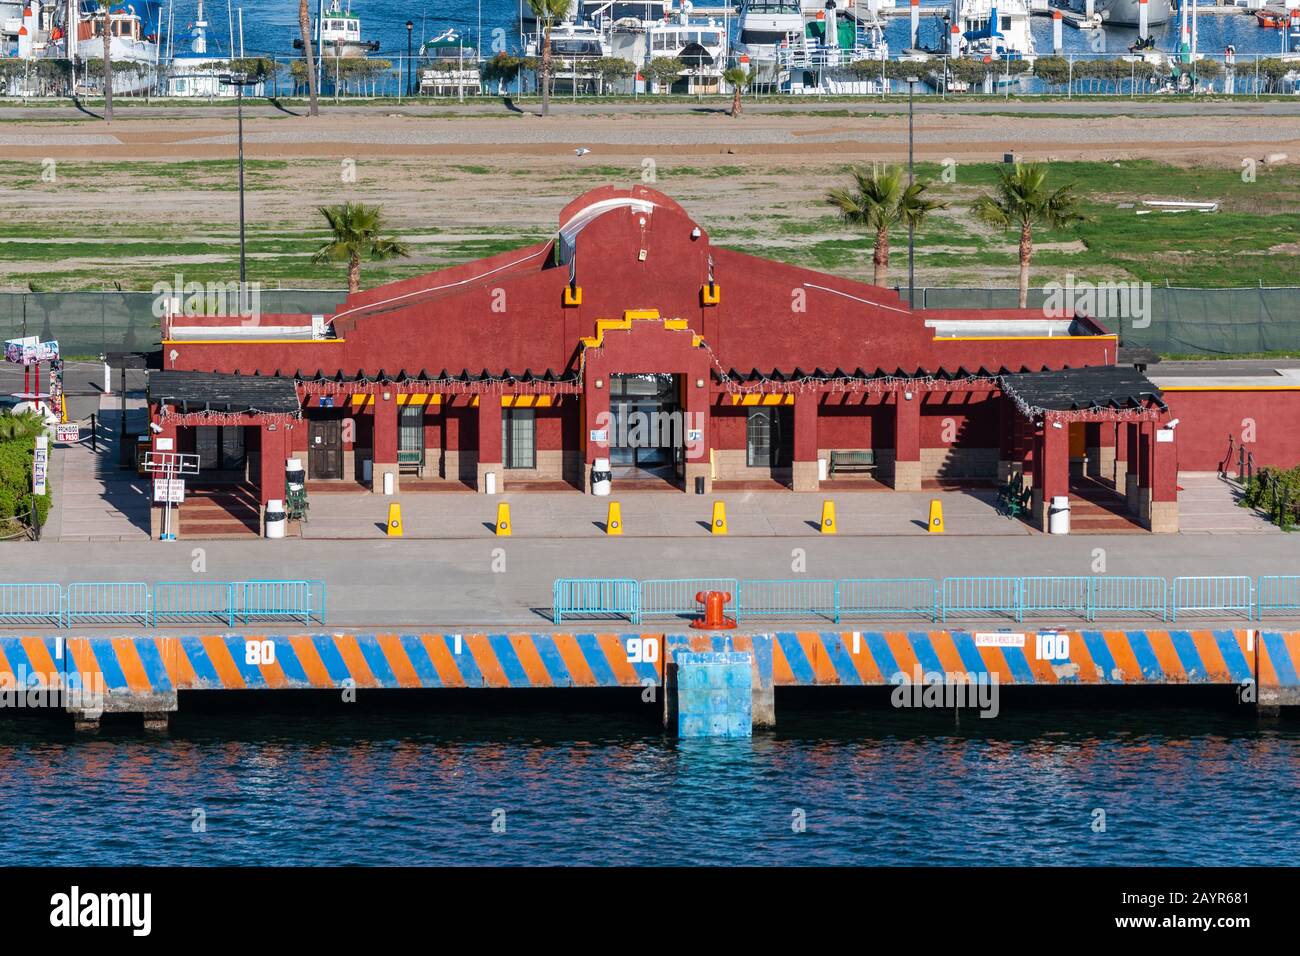 Ensenada, Mexique - 17 janvier 2012: Fermeture du terminal de croisière au port avec quelques bateaux de plaisance sur l'eau bleue à l'arrière. Banque D'Images